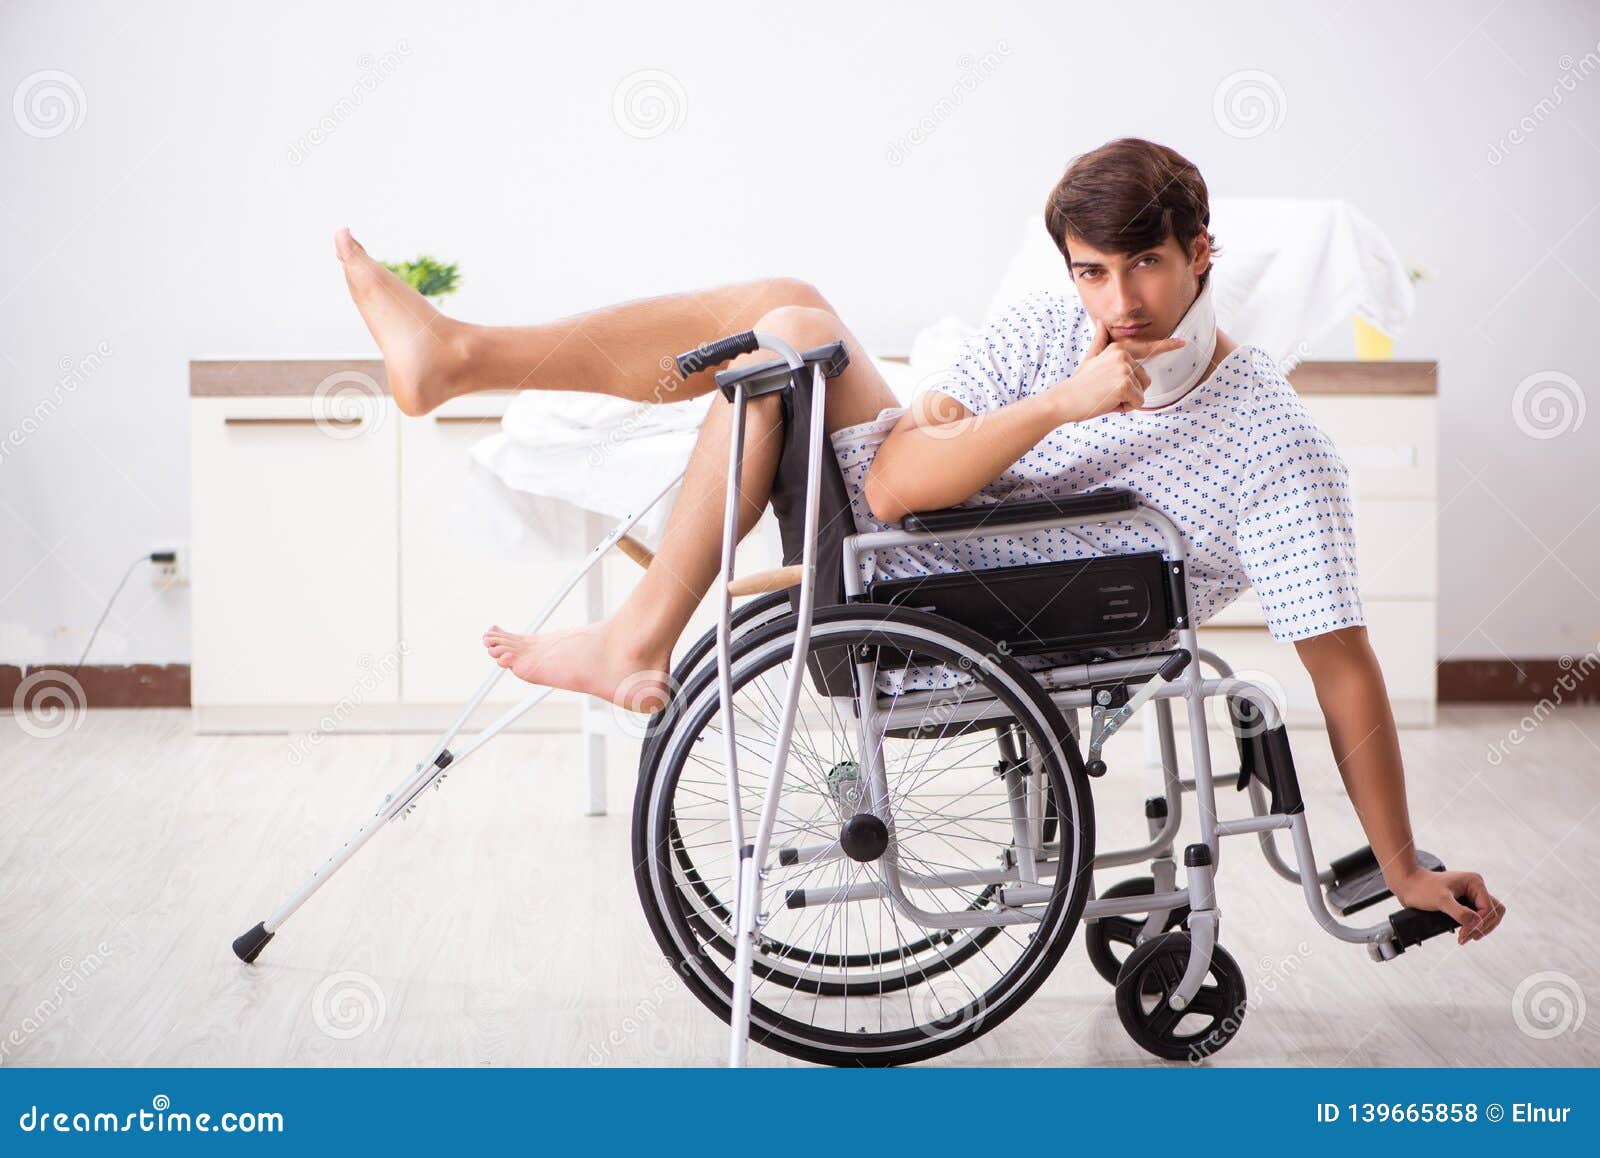 порно инвалидов колясках фото 102